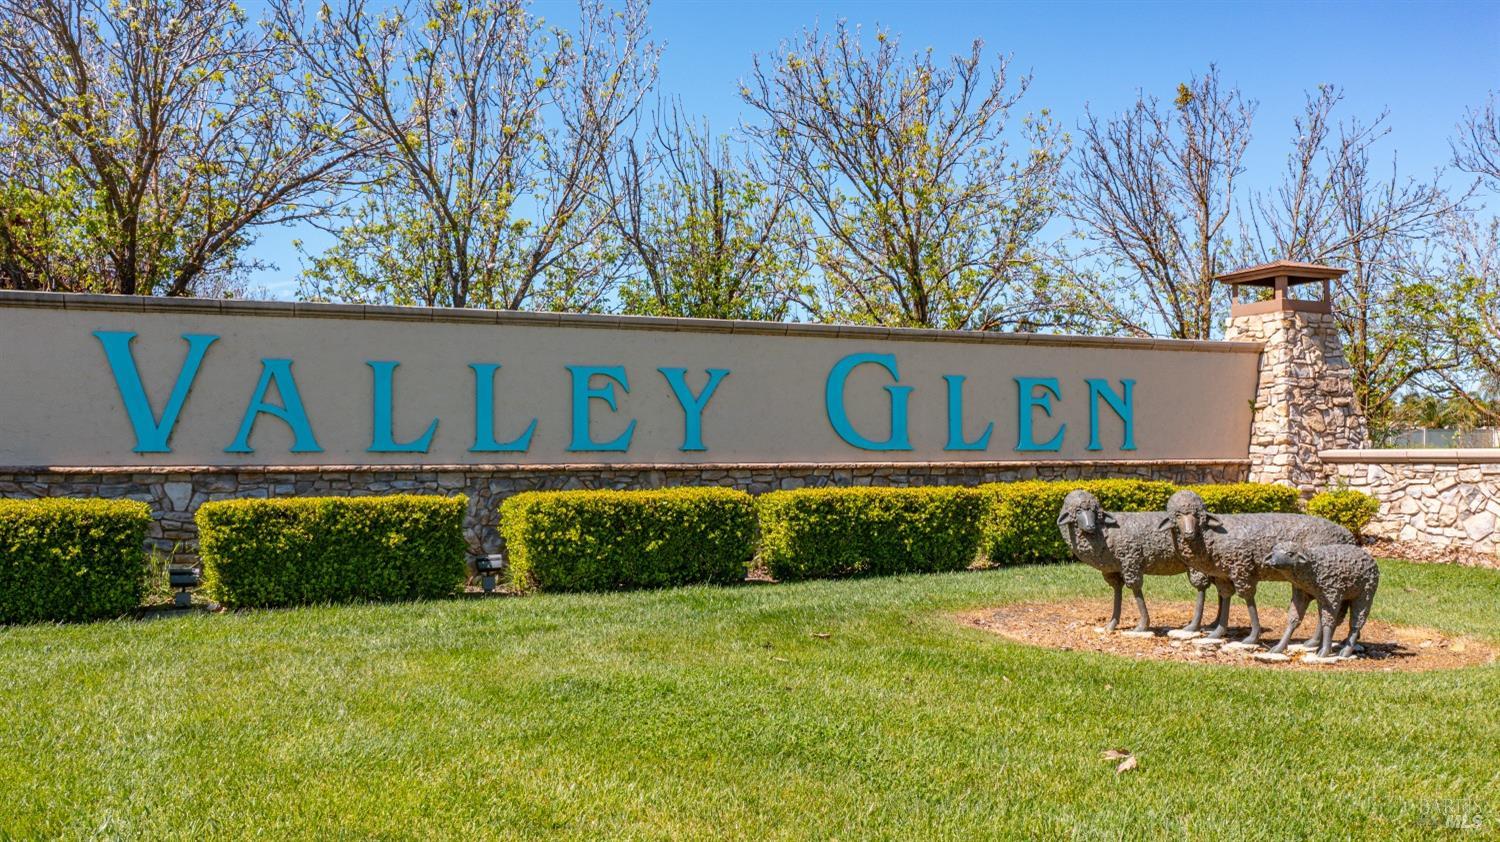 Photo of Valley Glen Dr in Dixon, CA